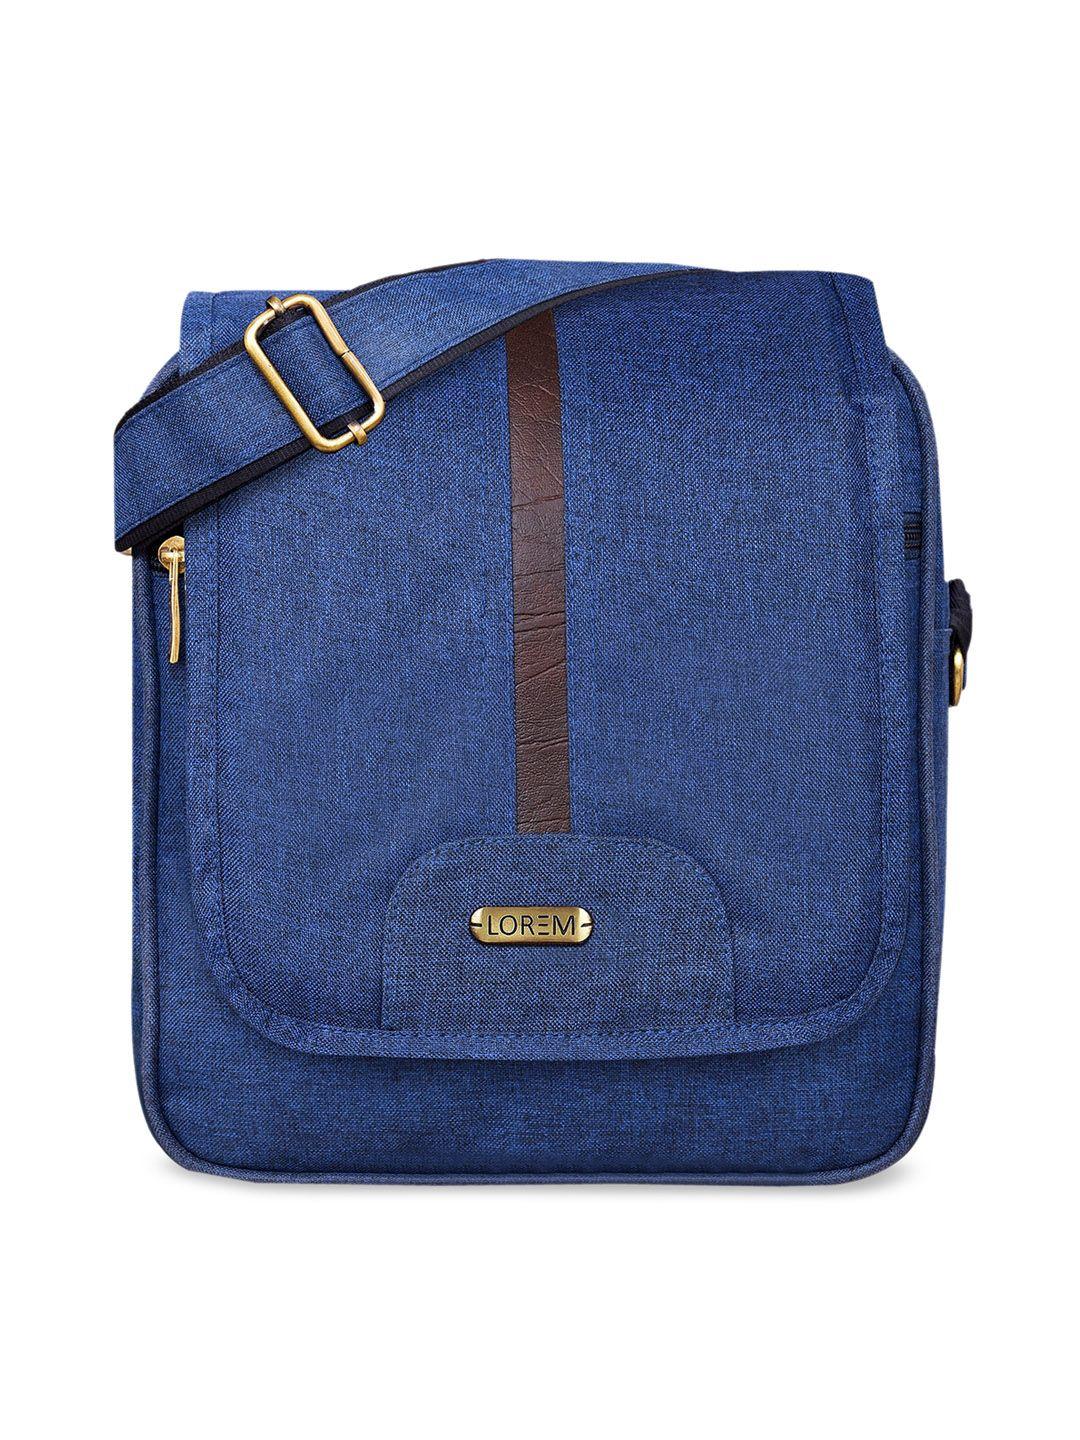 lorem-blue-structured-sling-bag